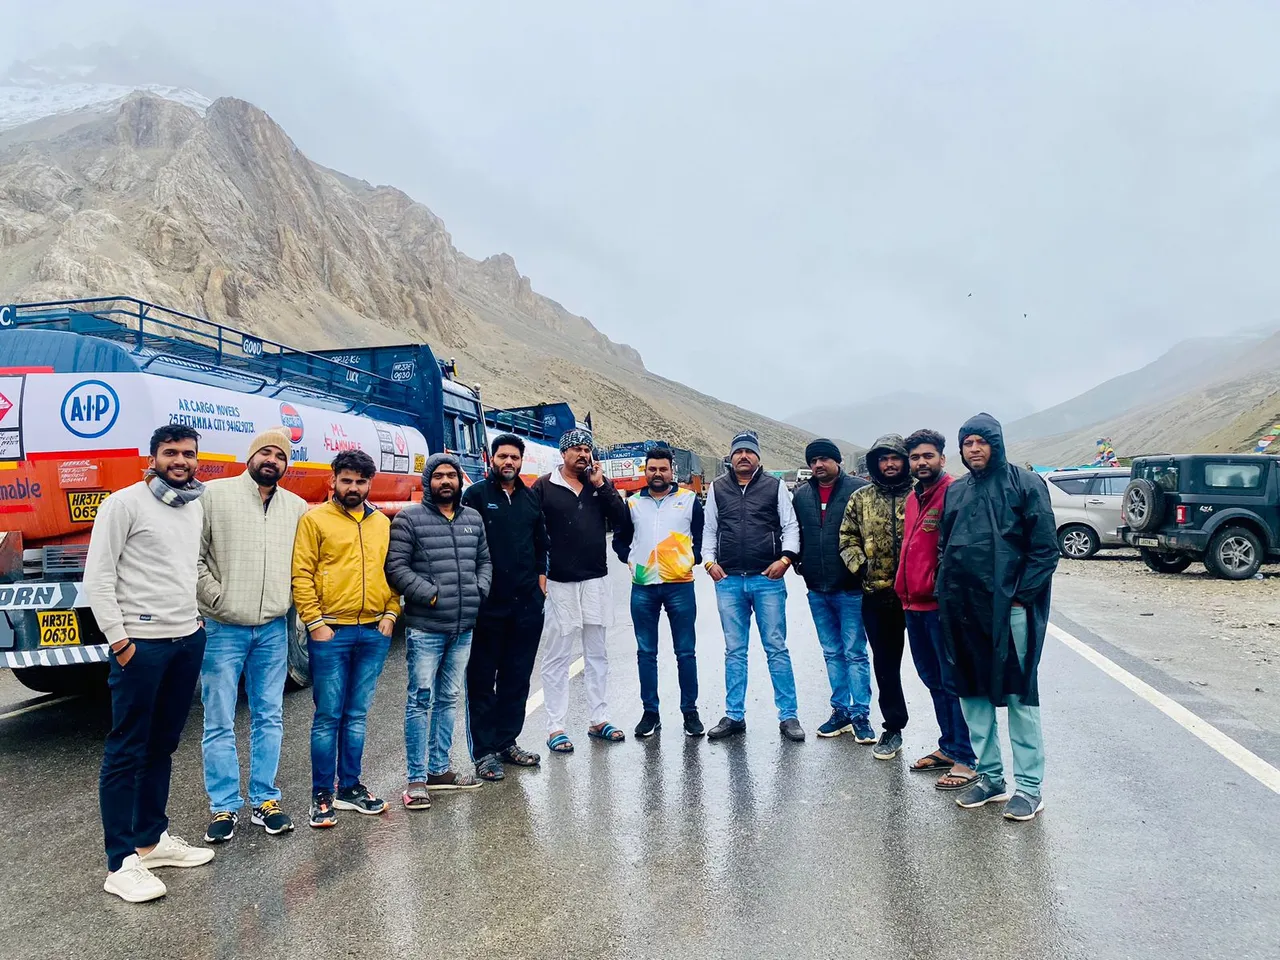 अमरनाथ यात्रा से वापस लौट रहे शिवपुरी के 12 यात्री हिमस्खलन से लेह-मनाली हाइवे पर फंसे